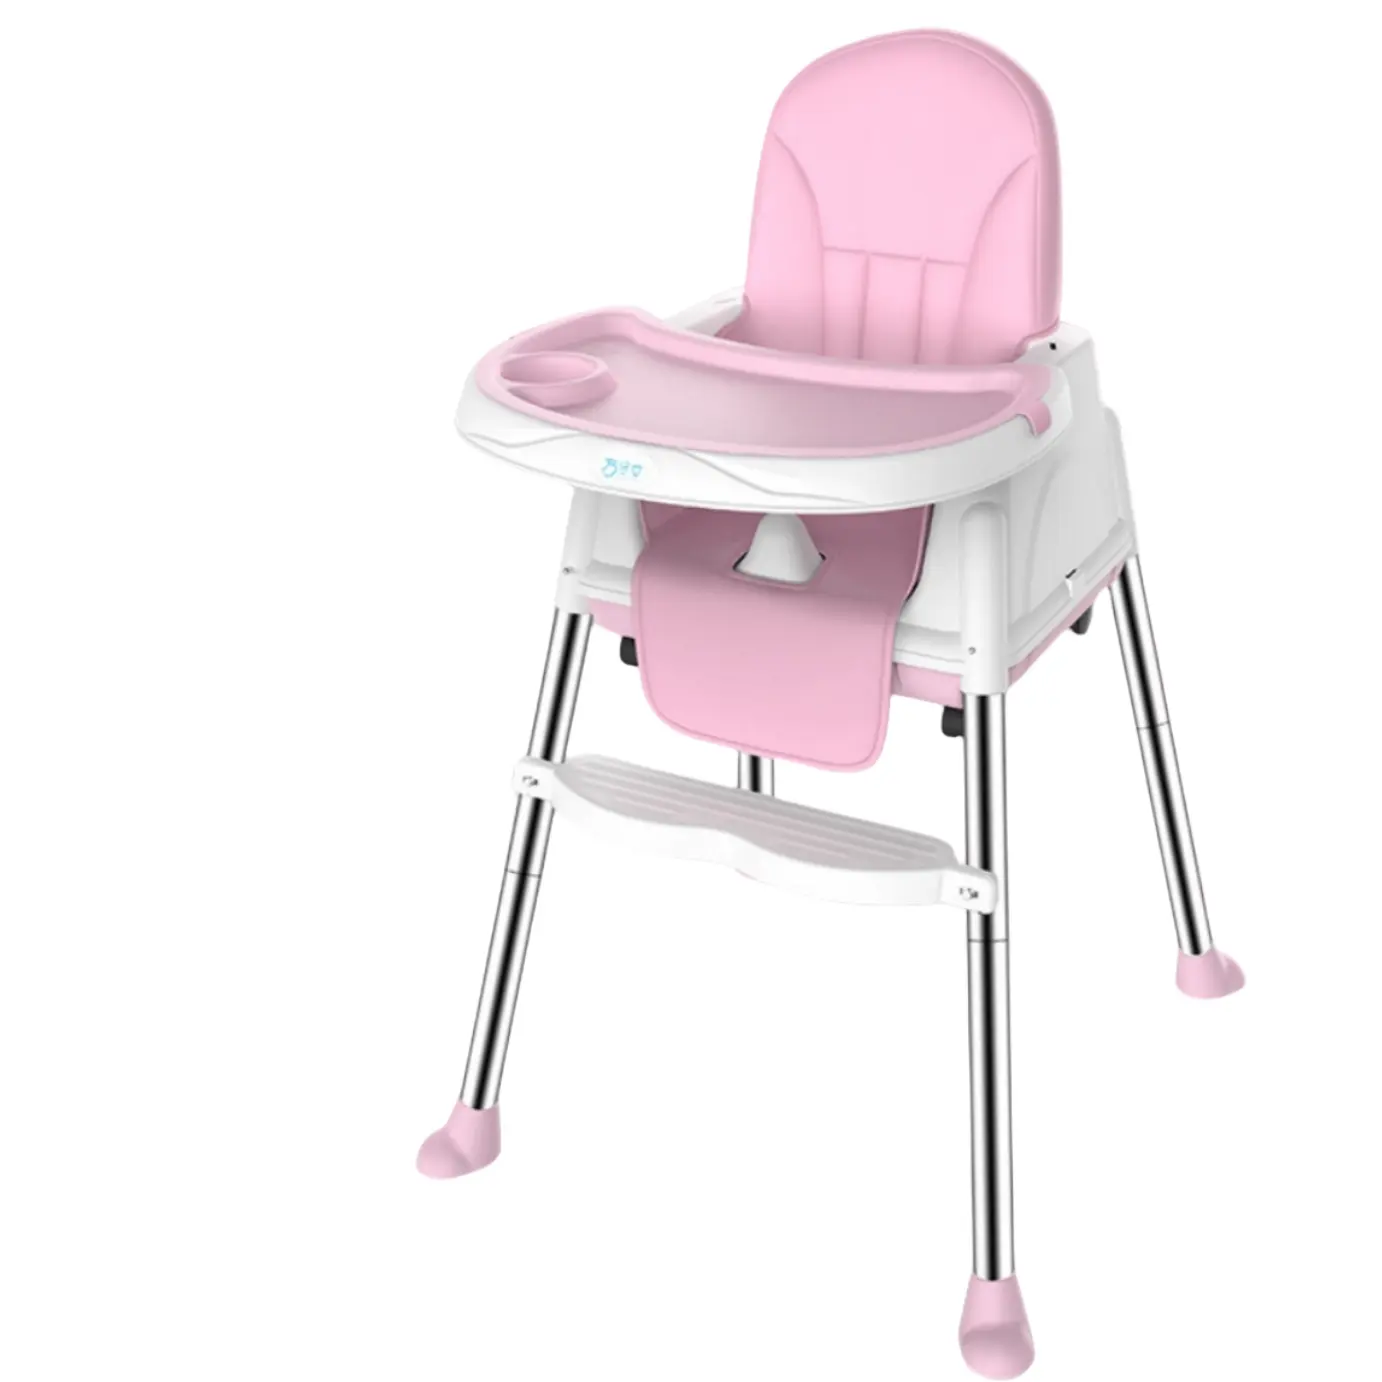 Распродажа, современный складной регулируемый детский стульчик для кормления с колесами